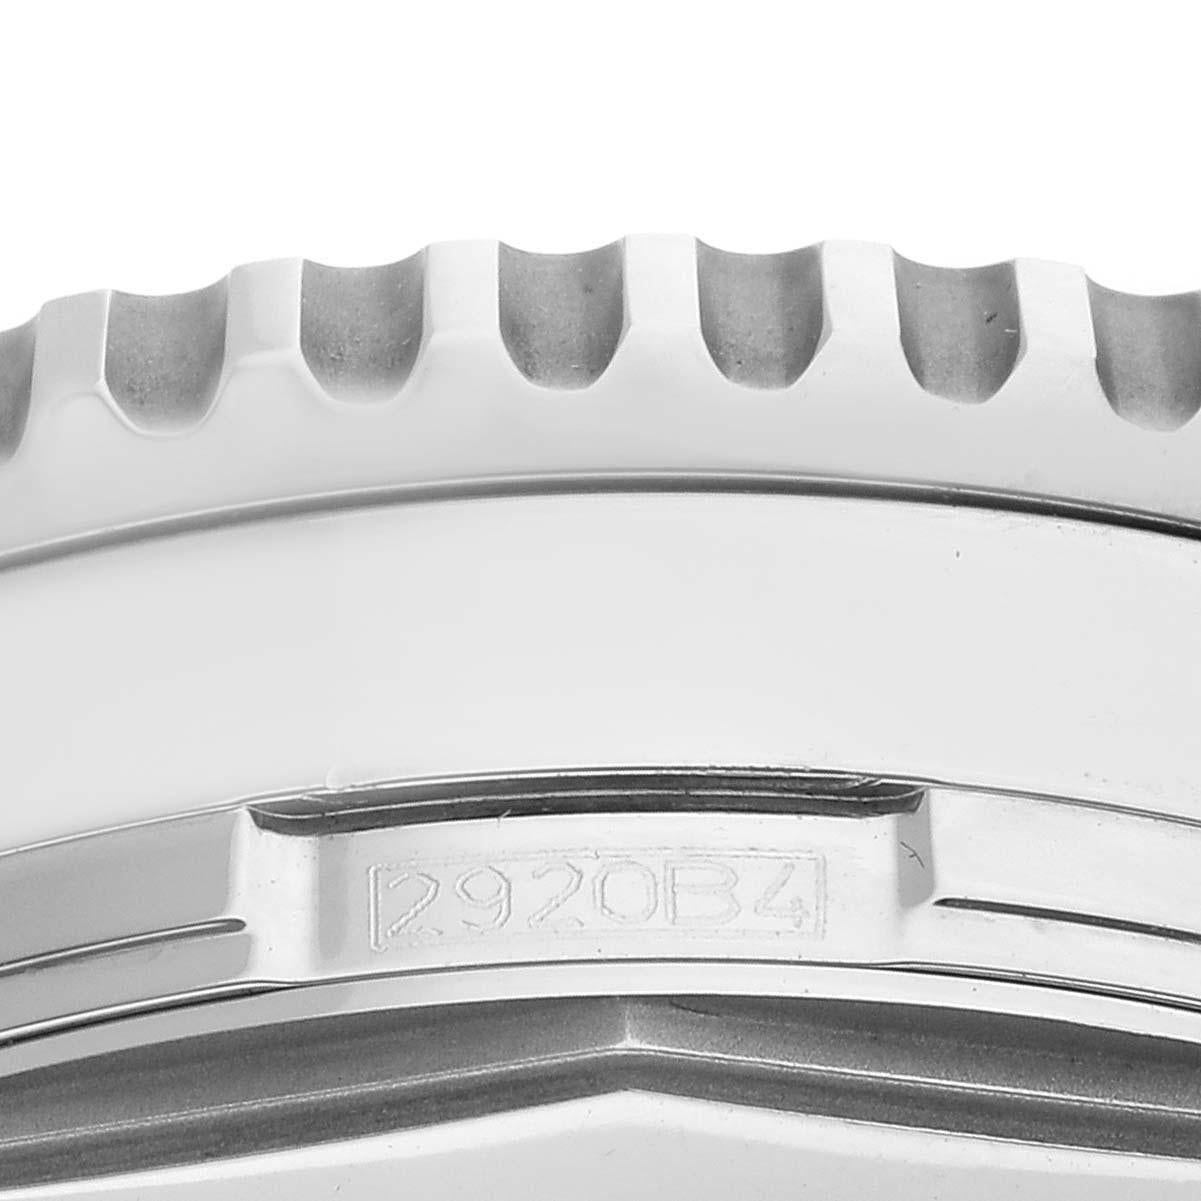 Breitling Navitimer World Black Dial Steel Mens Watch A24322 Box Card. Automatisches, offiziell zertifiziertes Chronometerwerk mit Selbstaufzug. Chronographen-Funktion. Gehäuse aus Edelstahl mit einem Durchmesser von 46.0 mm. Krone und Drücker aus